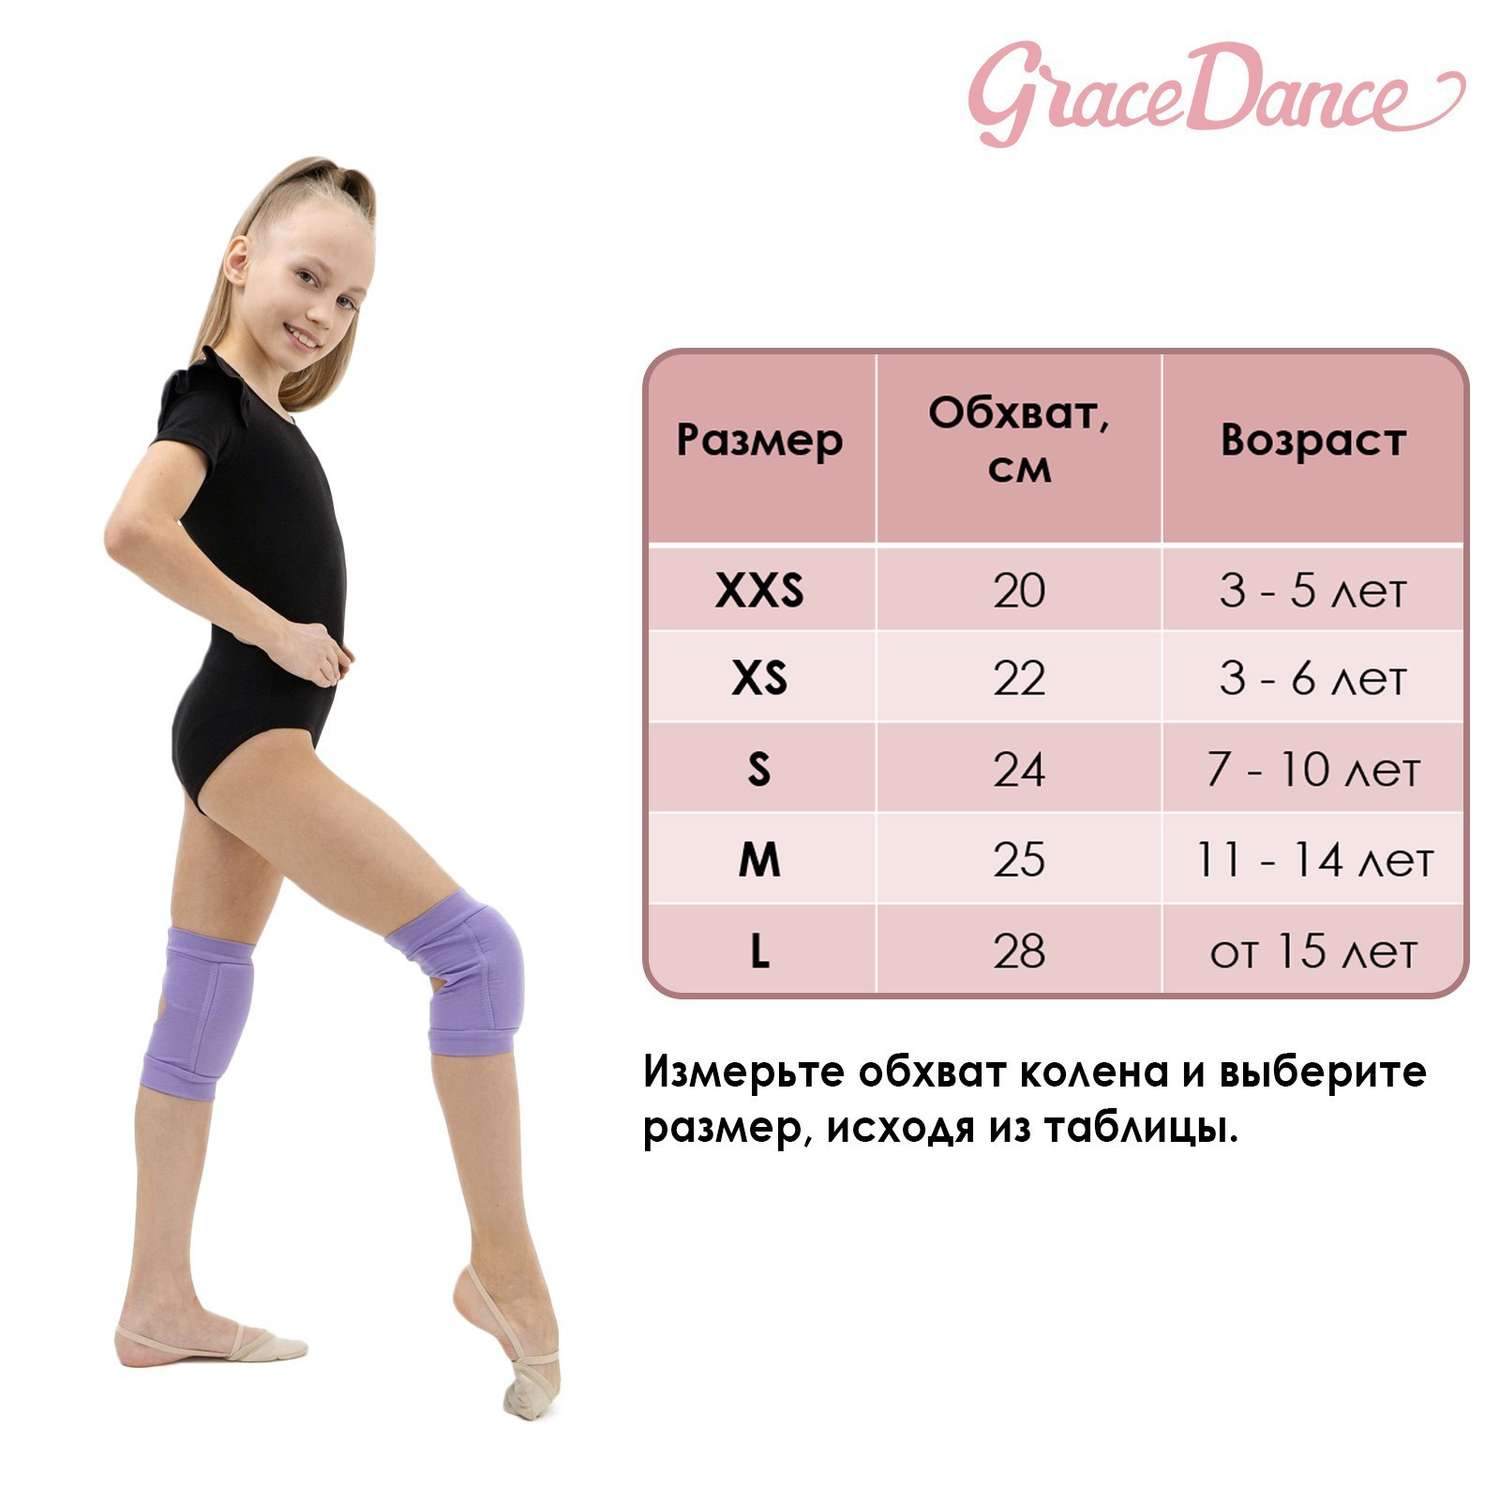 Наколенники Grace Dance для гимнастики и танцев. размер XXS 3-5 лет. цвет чёрный - фото 11